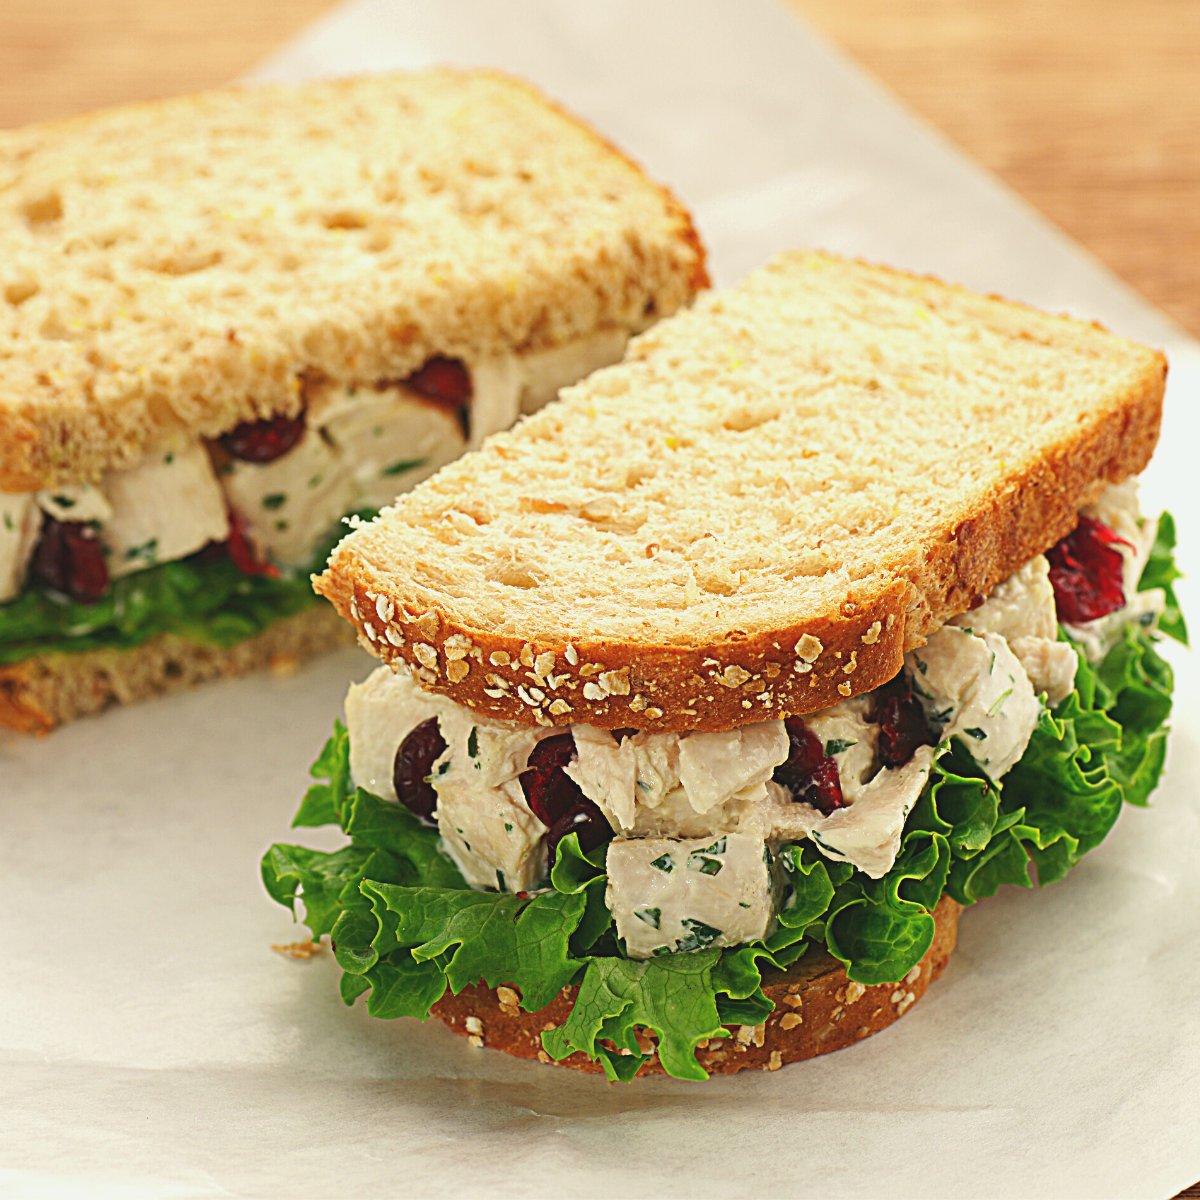 Arby’s Chicken Salad Sandwich Copycat Recipe